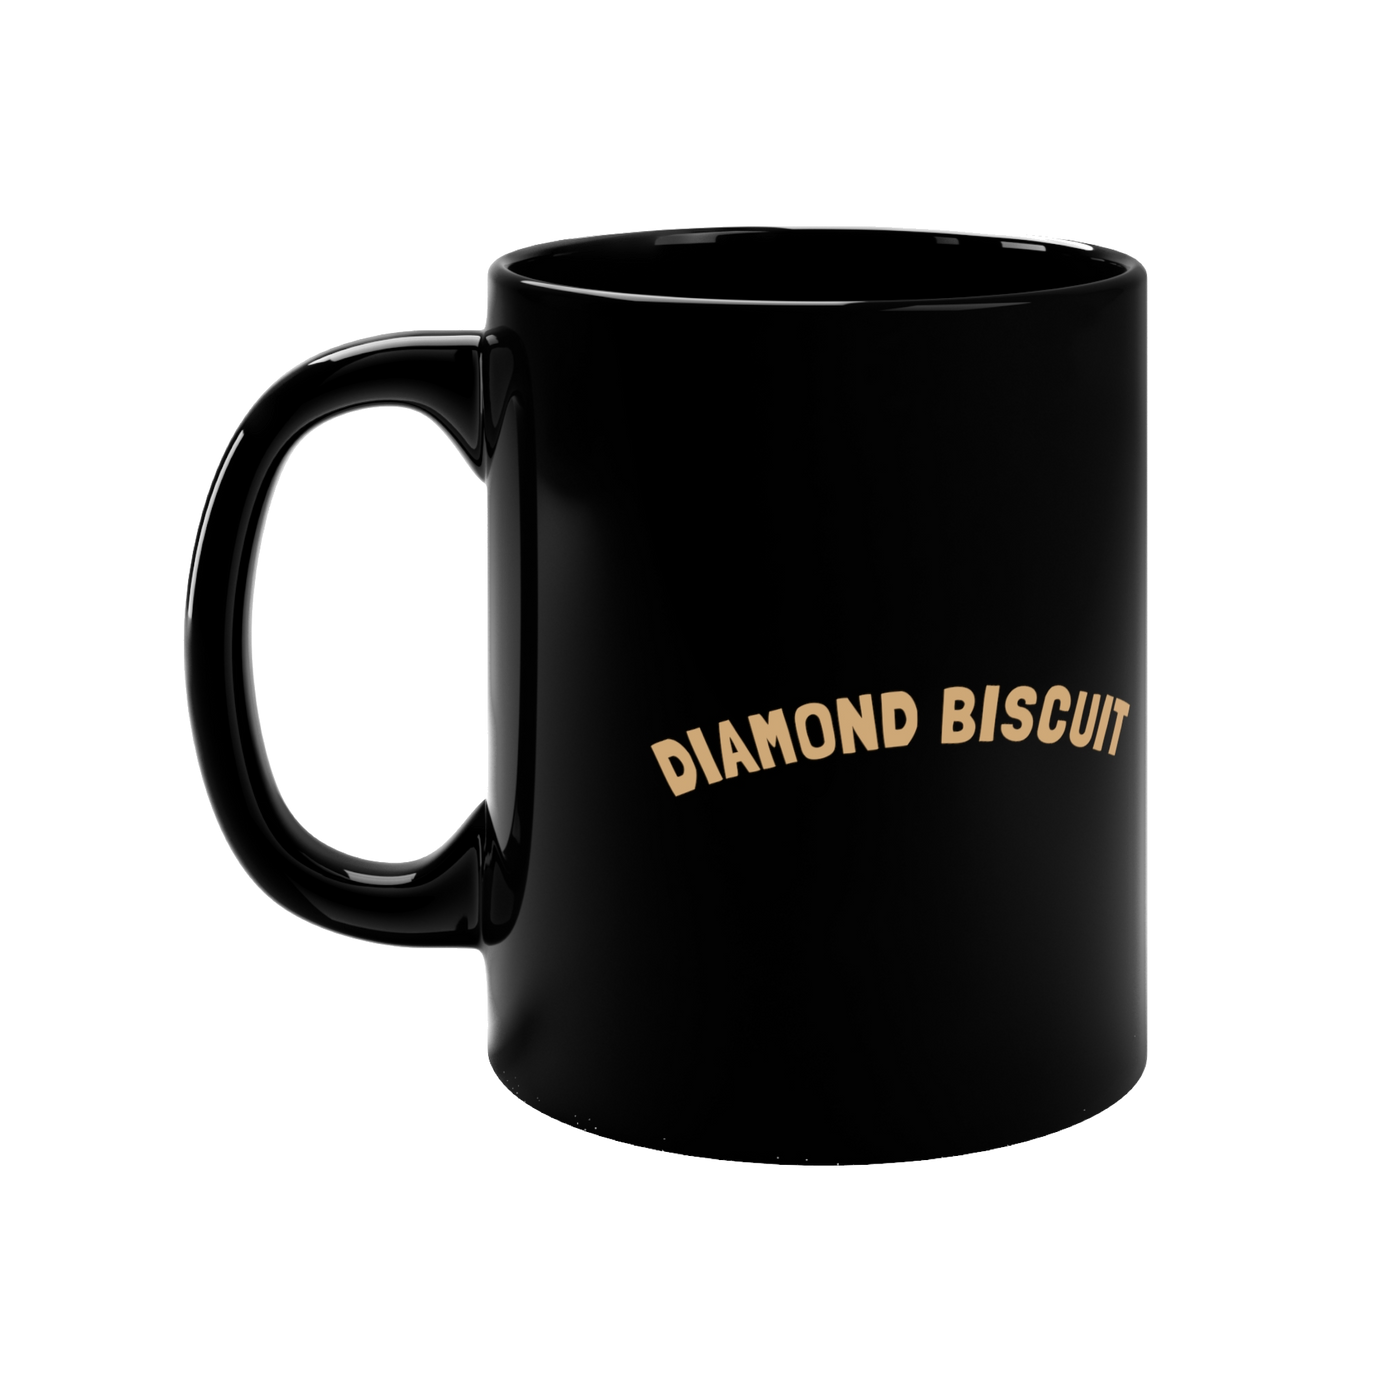 Diamond Biscuit Mug by Filmytees